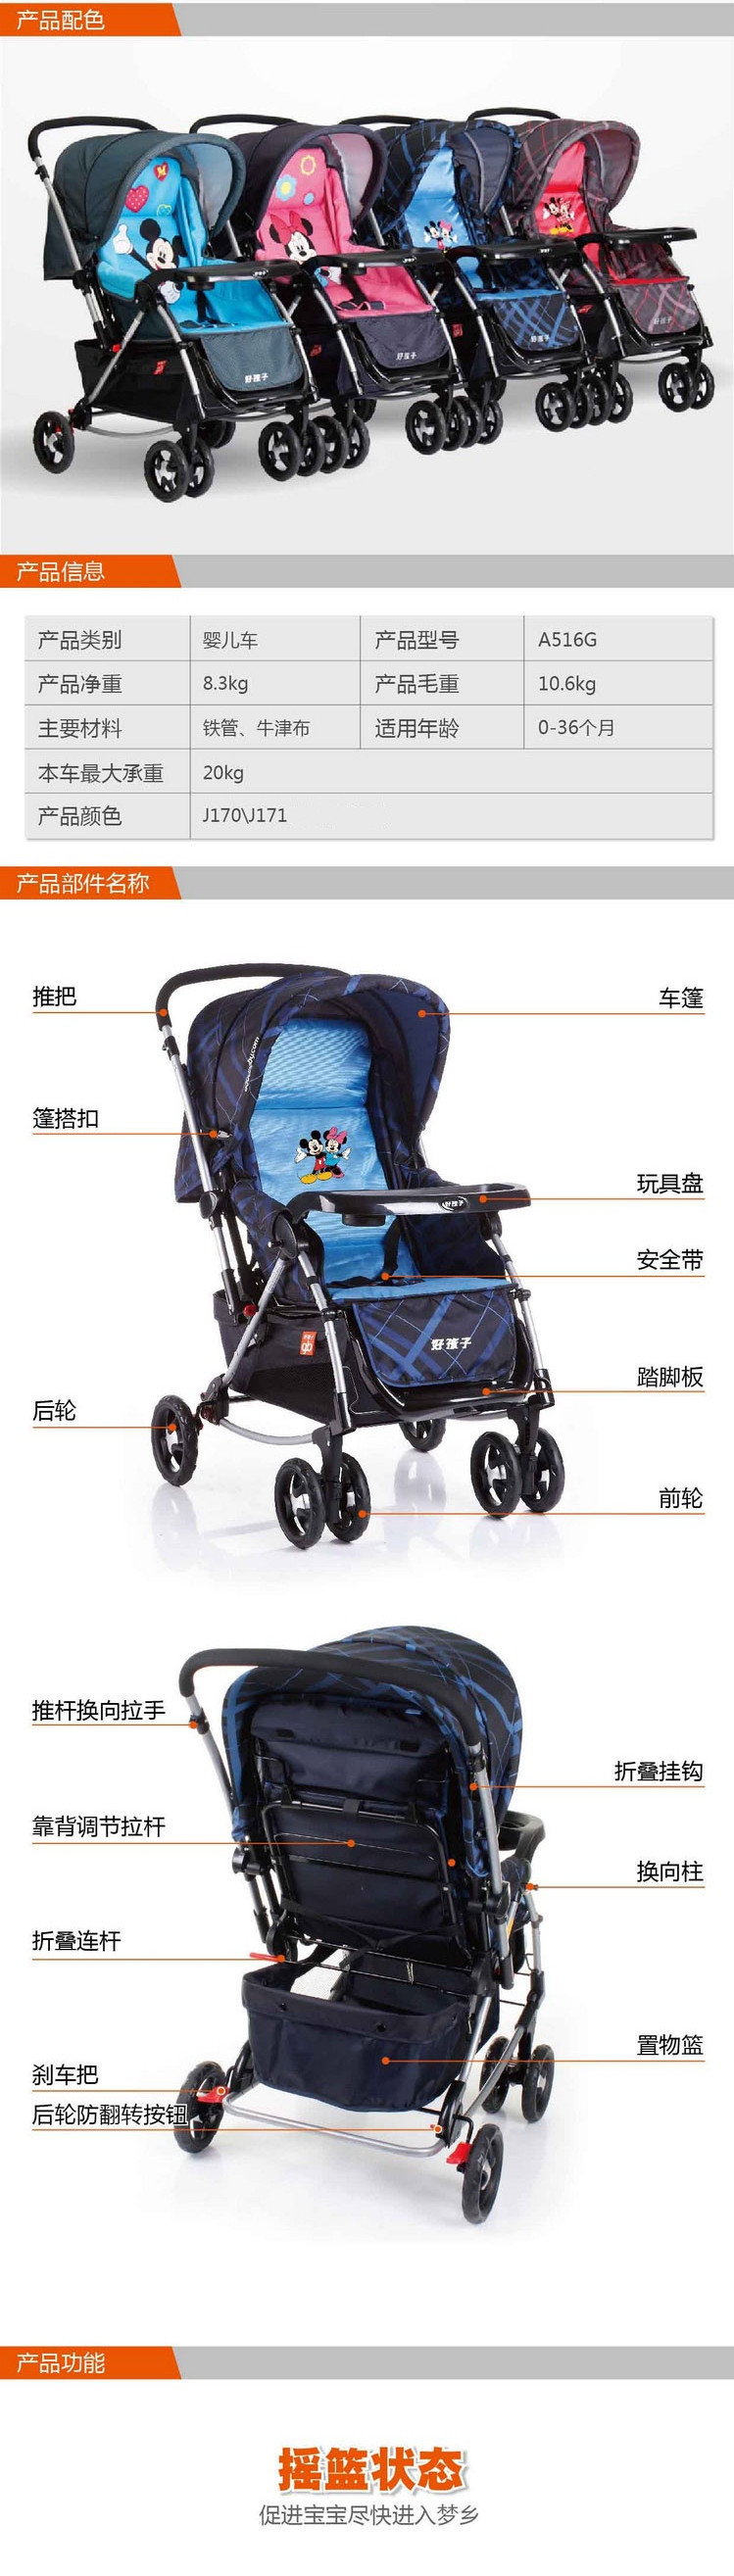 首页 母婴用品 童车,婴儿车 婴儿推车 多功能双向婴儿手推车 好孩子